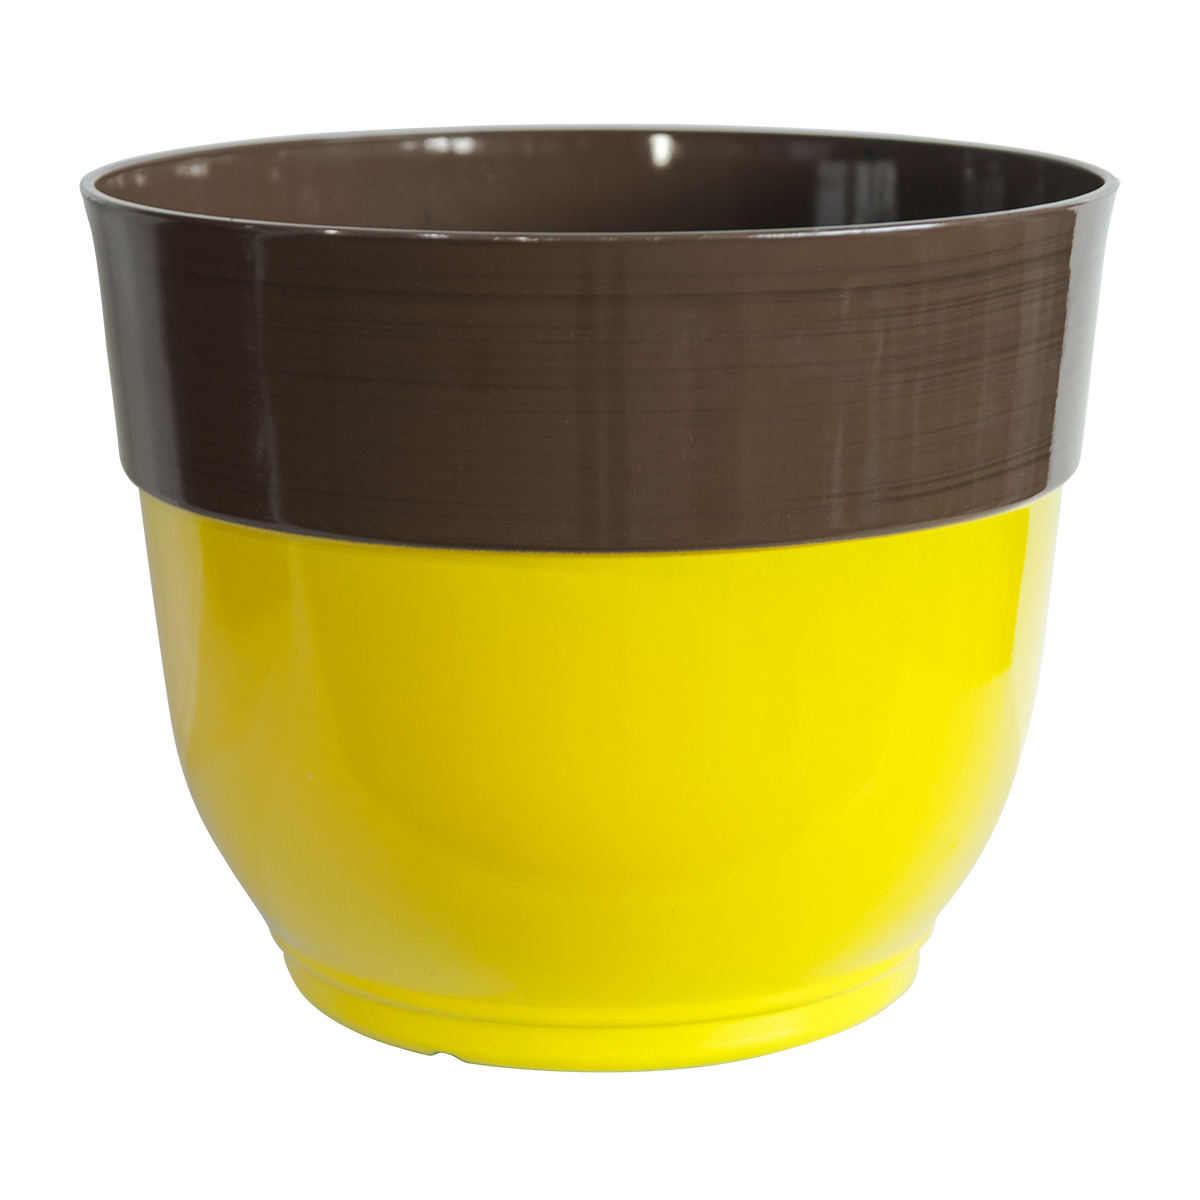 Resin Bowl Shape Glazed Ceramic Effect Planter